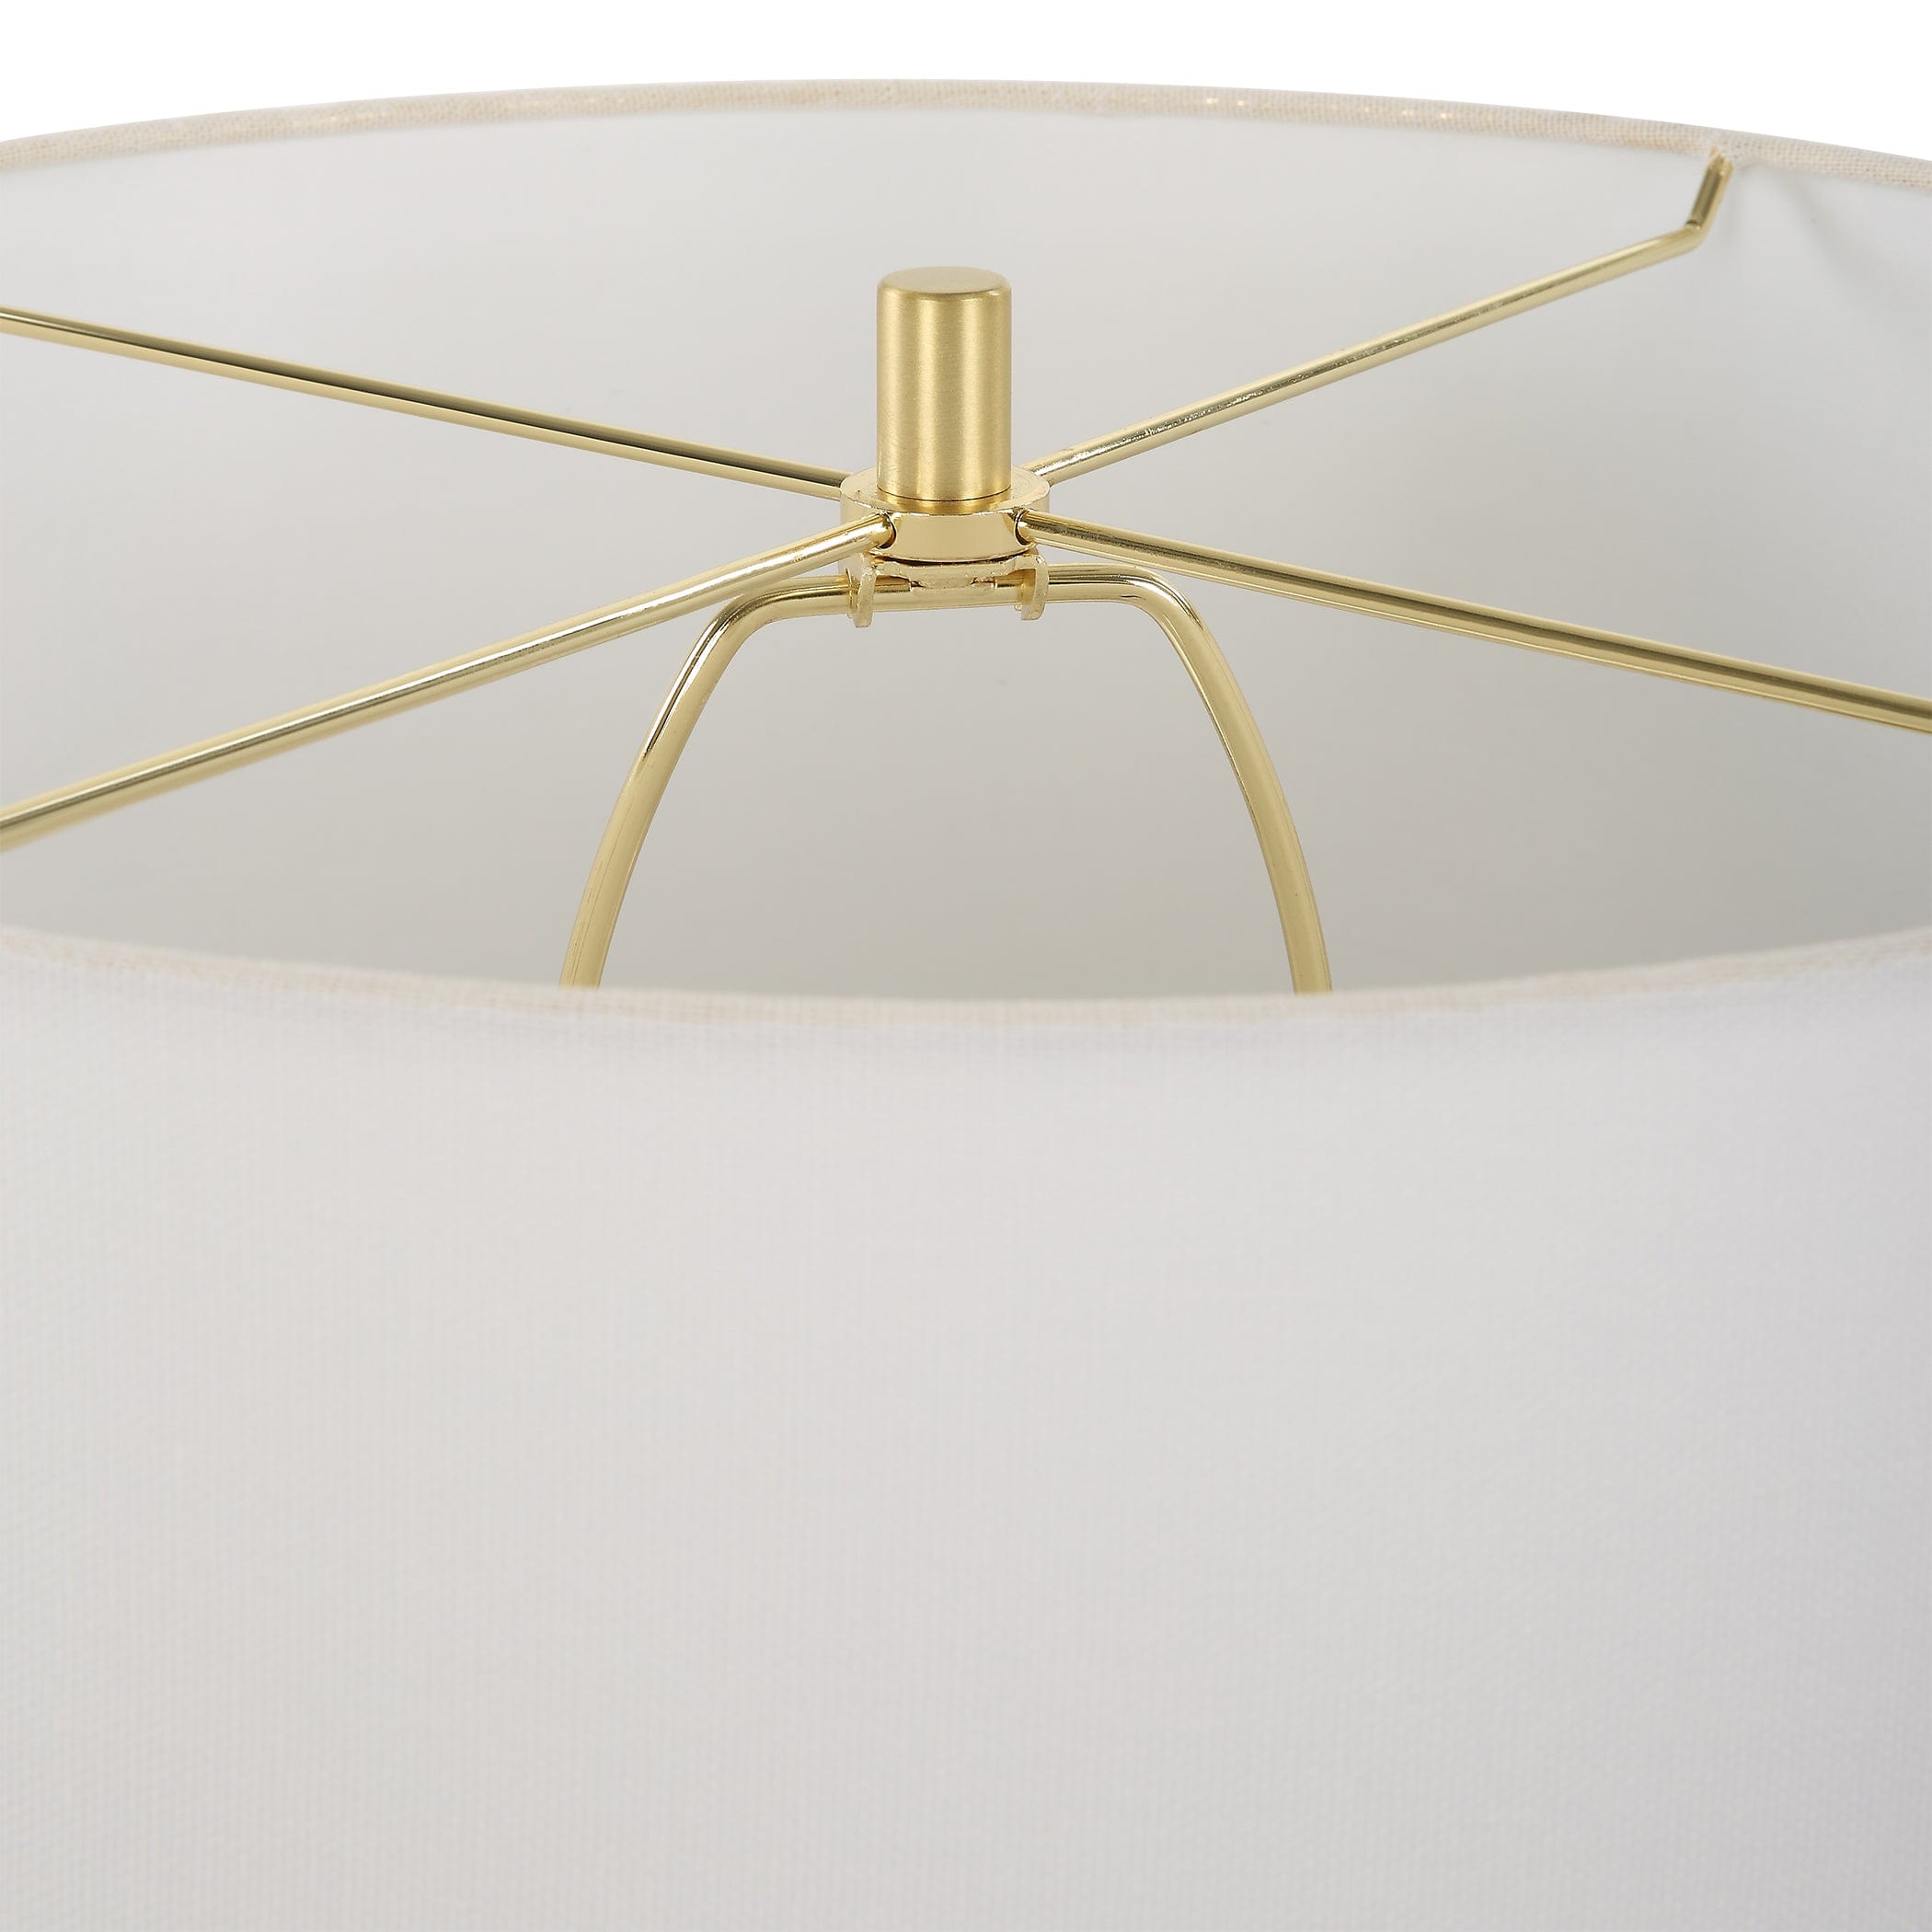 Wrenley Ridged White Table Lamp Uttermost